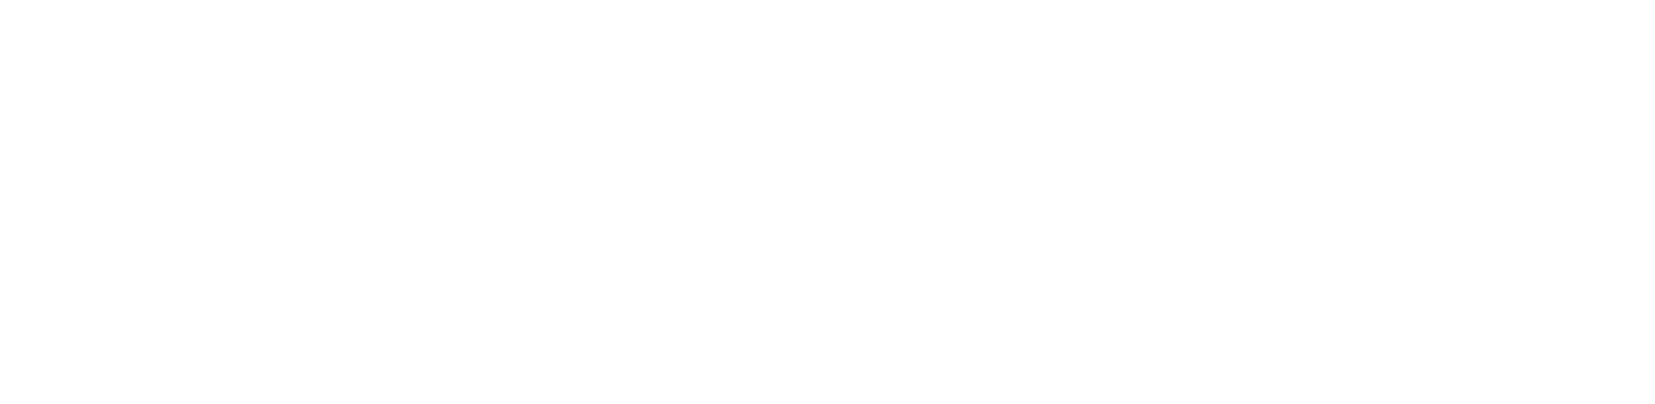 icelandair-logo.png